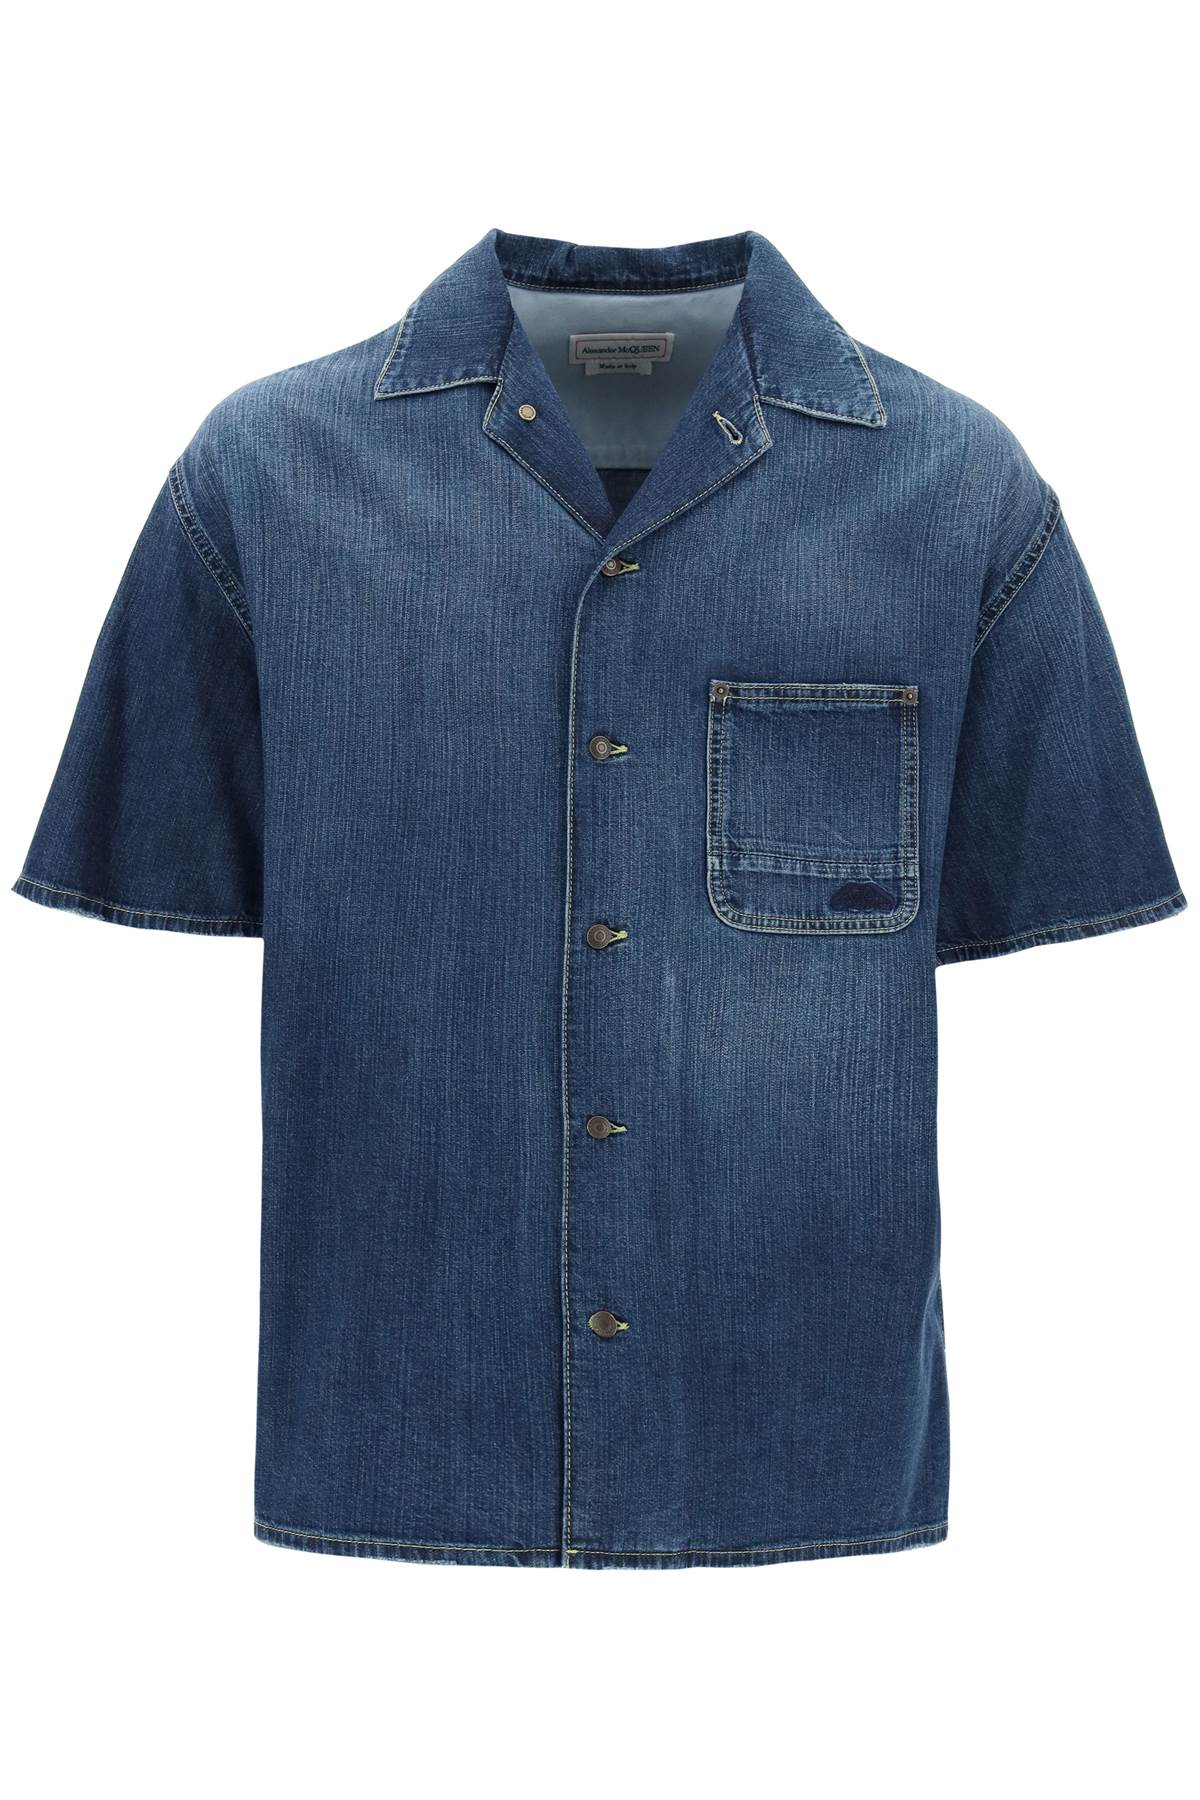 オーガニックデニムショートスリーブシャツ ブルー - SS24コレクション